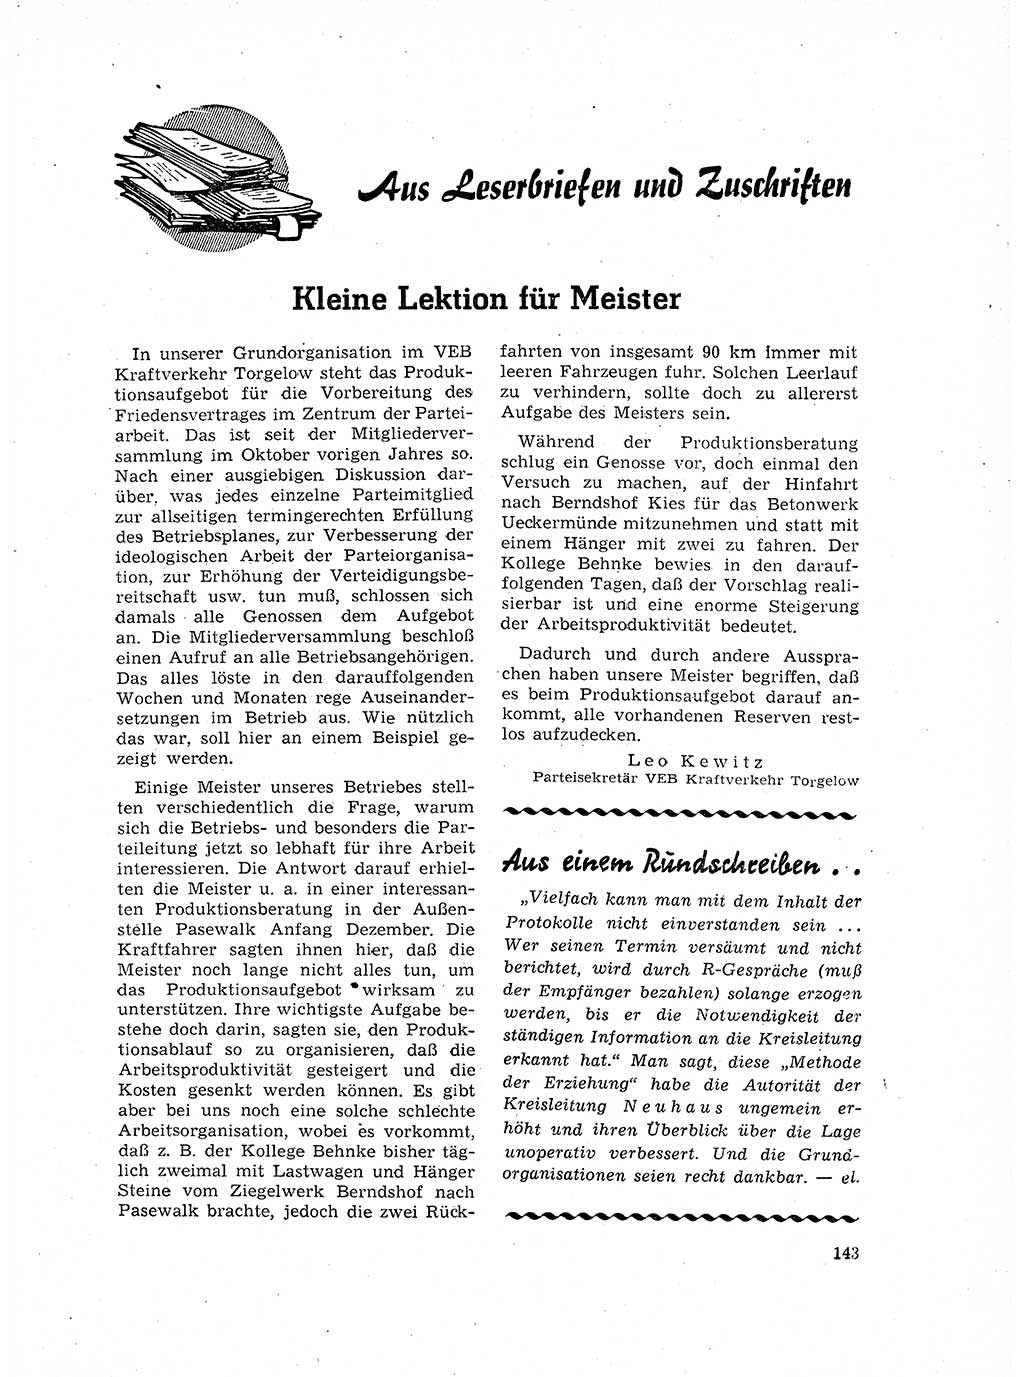 Neuer Weg (NW), Organ des Zentralkomitees (ZK) der SED (Sozialistische Einheitspartei Deutschlands) für Fragen des Parteilebens, 17. Jahrgang [Deutsche Demokratische Republik (DDR)] 1962, Seite 143 (NW ZK SED DDR 1962, S. 143)